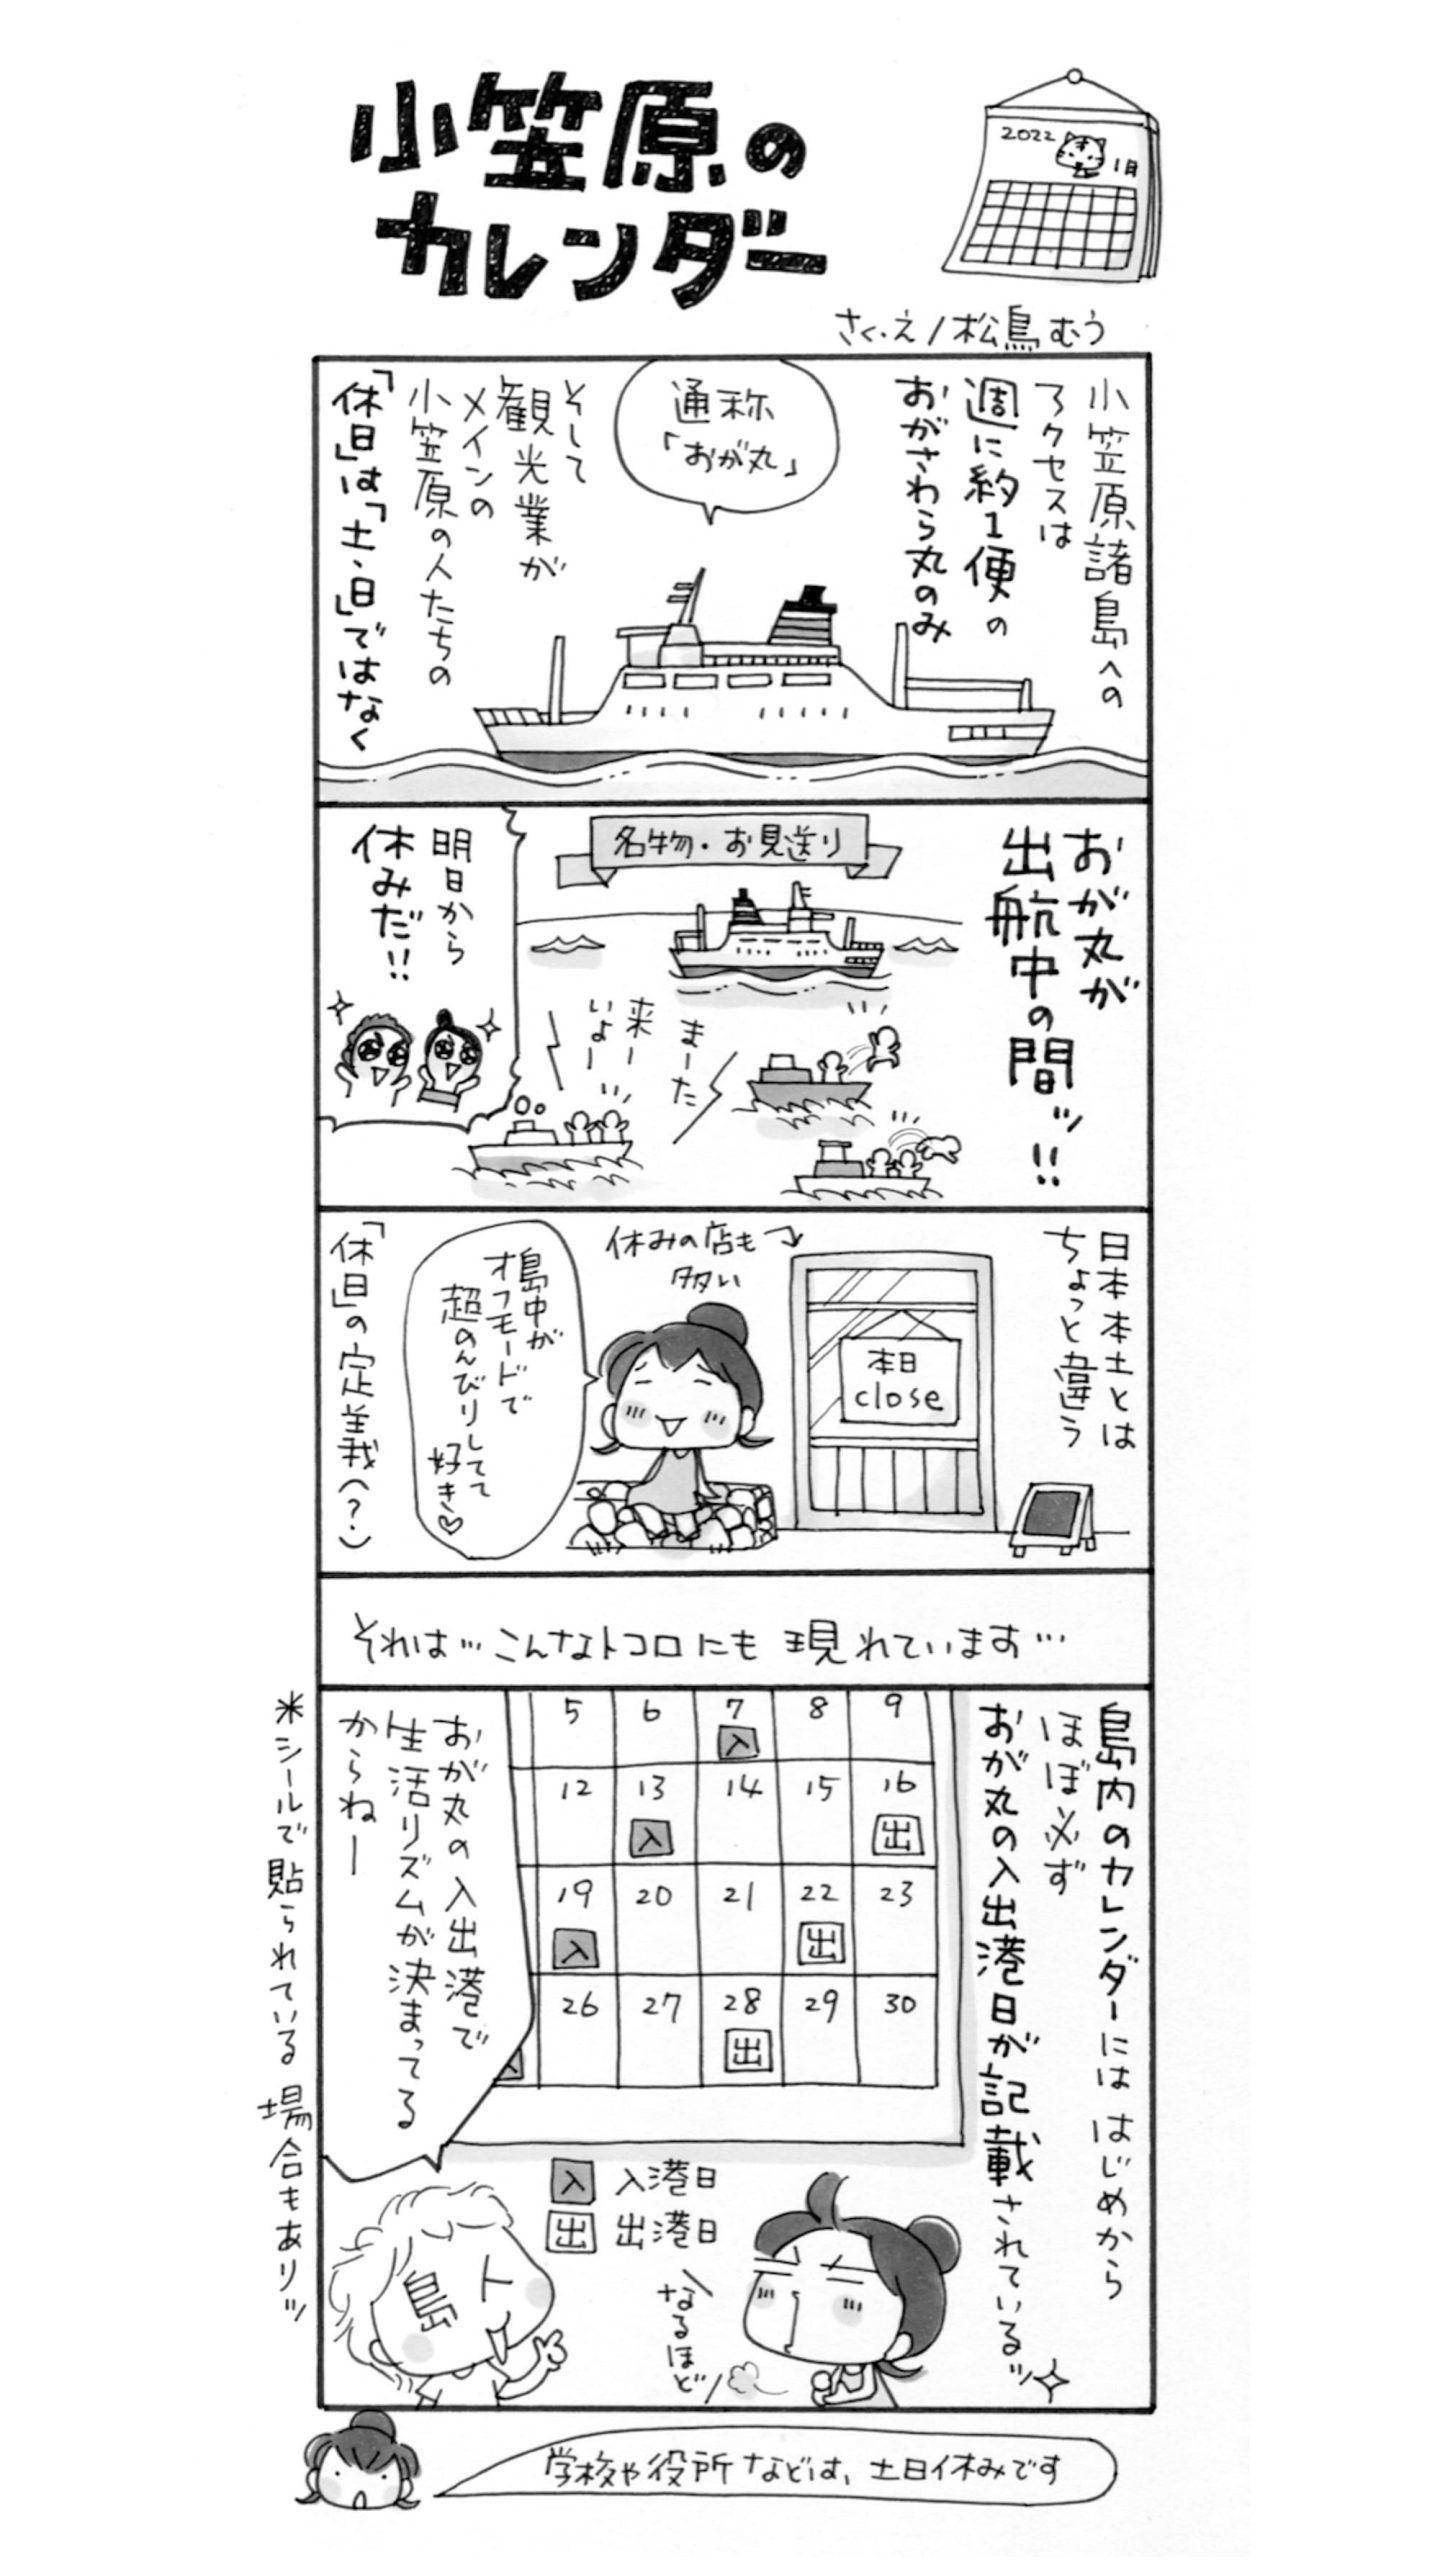 4コマ漫画 島旅是好日 19 小笠原のカレンダー 寄稿 松鳥むう Ritokei 離島経済新聞